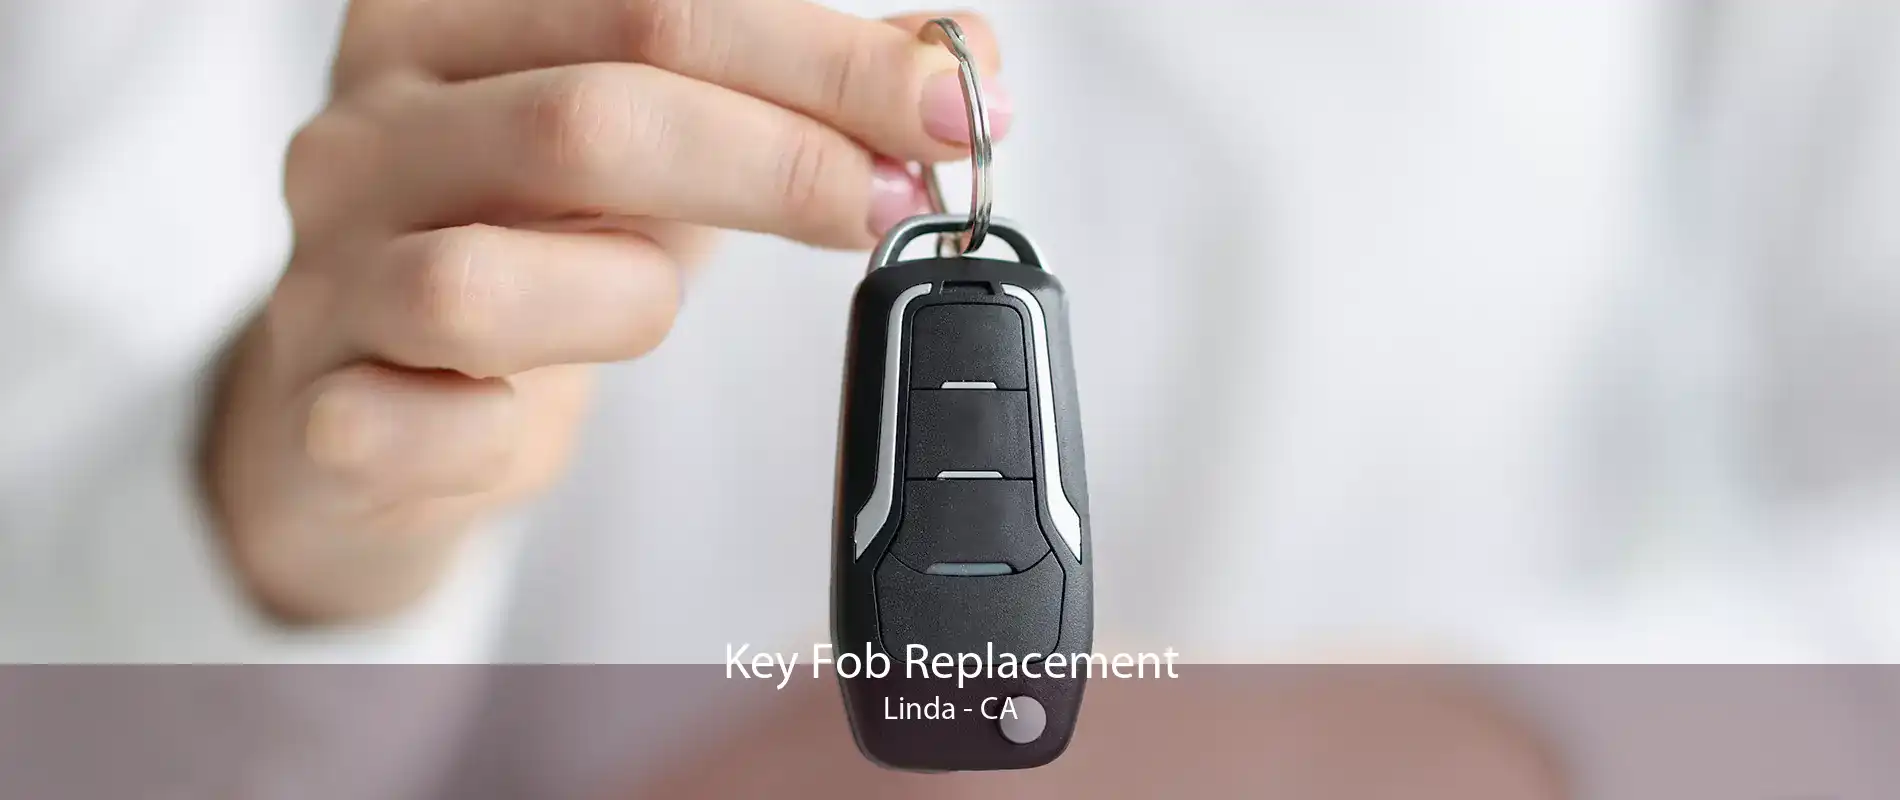 Key Fob Replacement Linda - CA